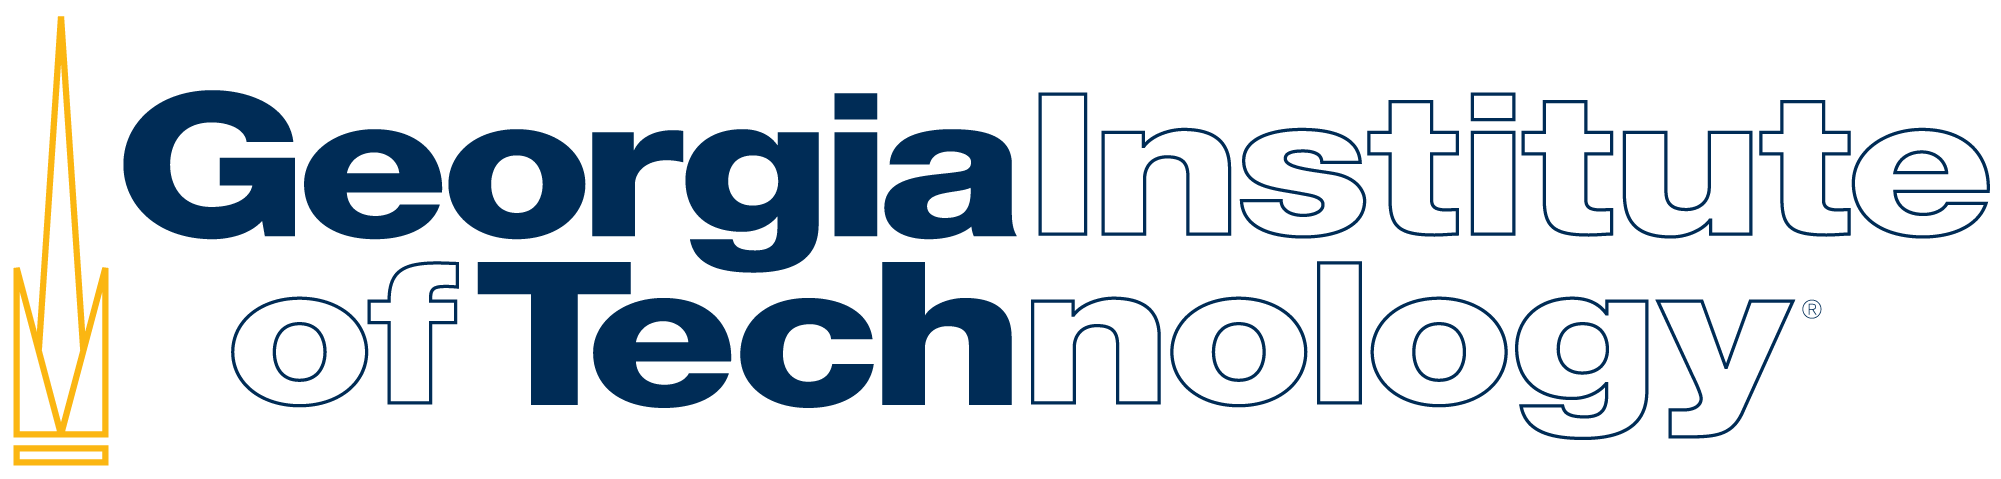 gatech-logo.png